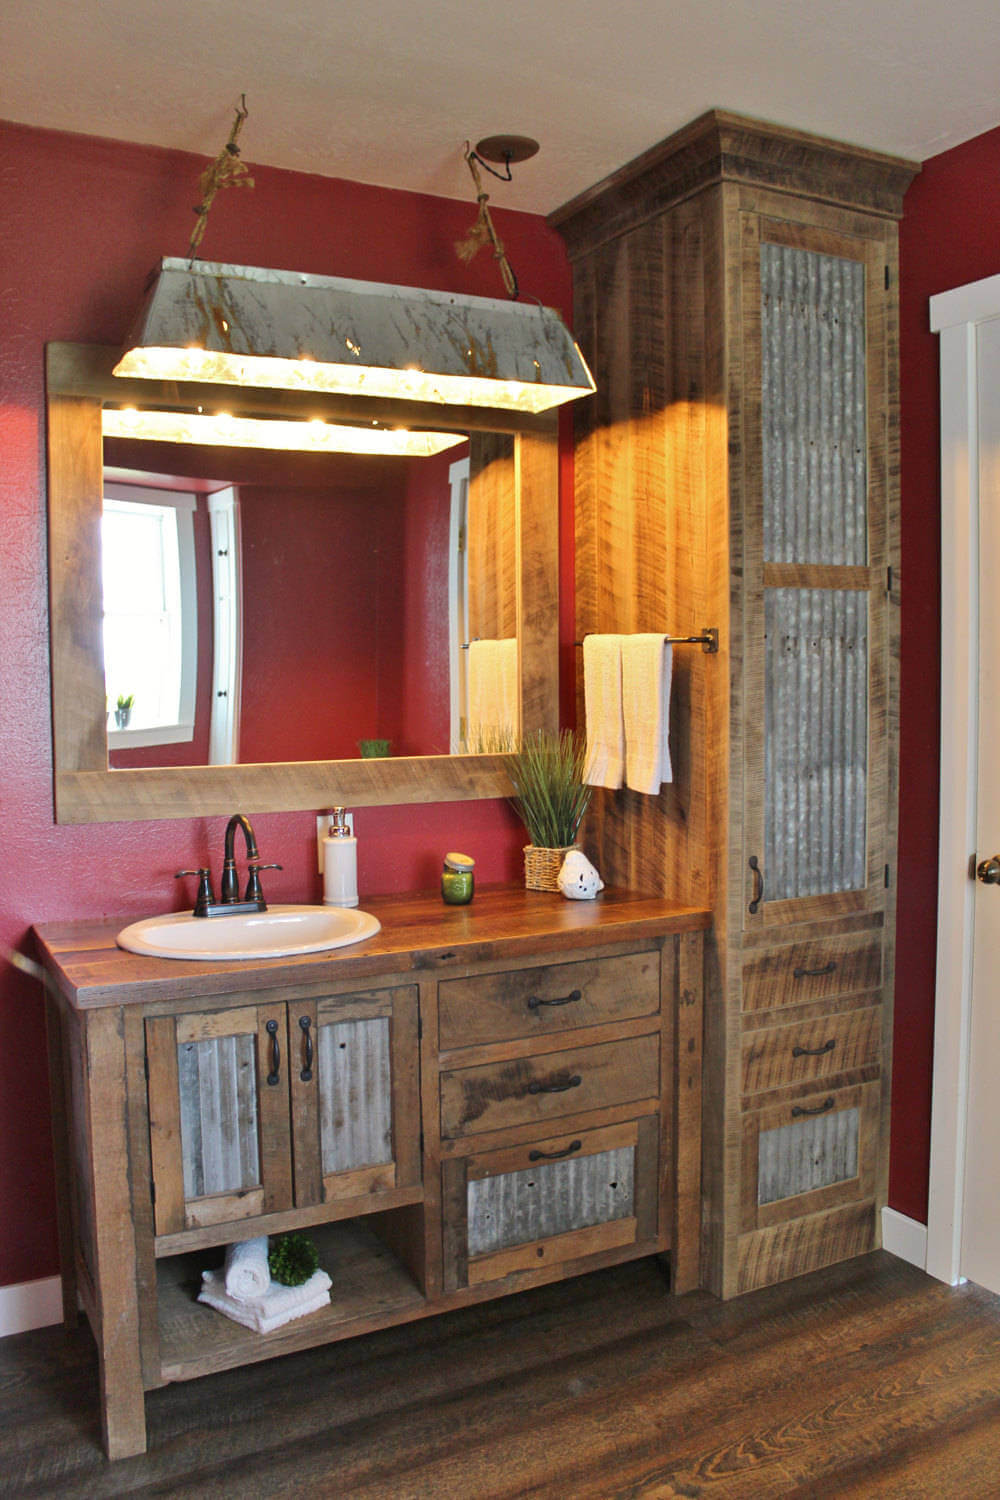 35 Best Rustic Bathroom Vanity Ideas And Designs For 2021 - Diy Rustic Bathroom Vanity Ideas